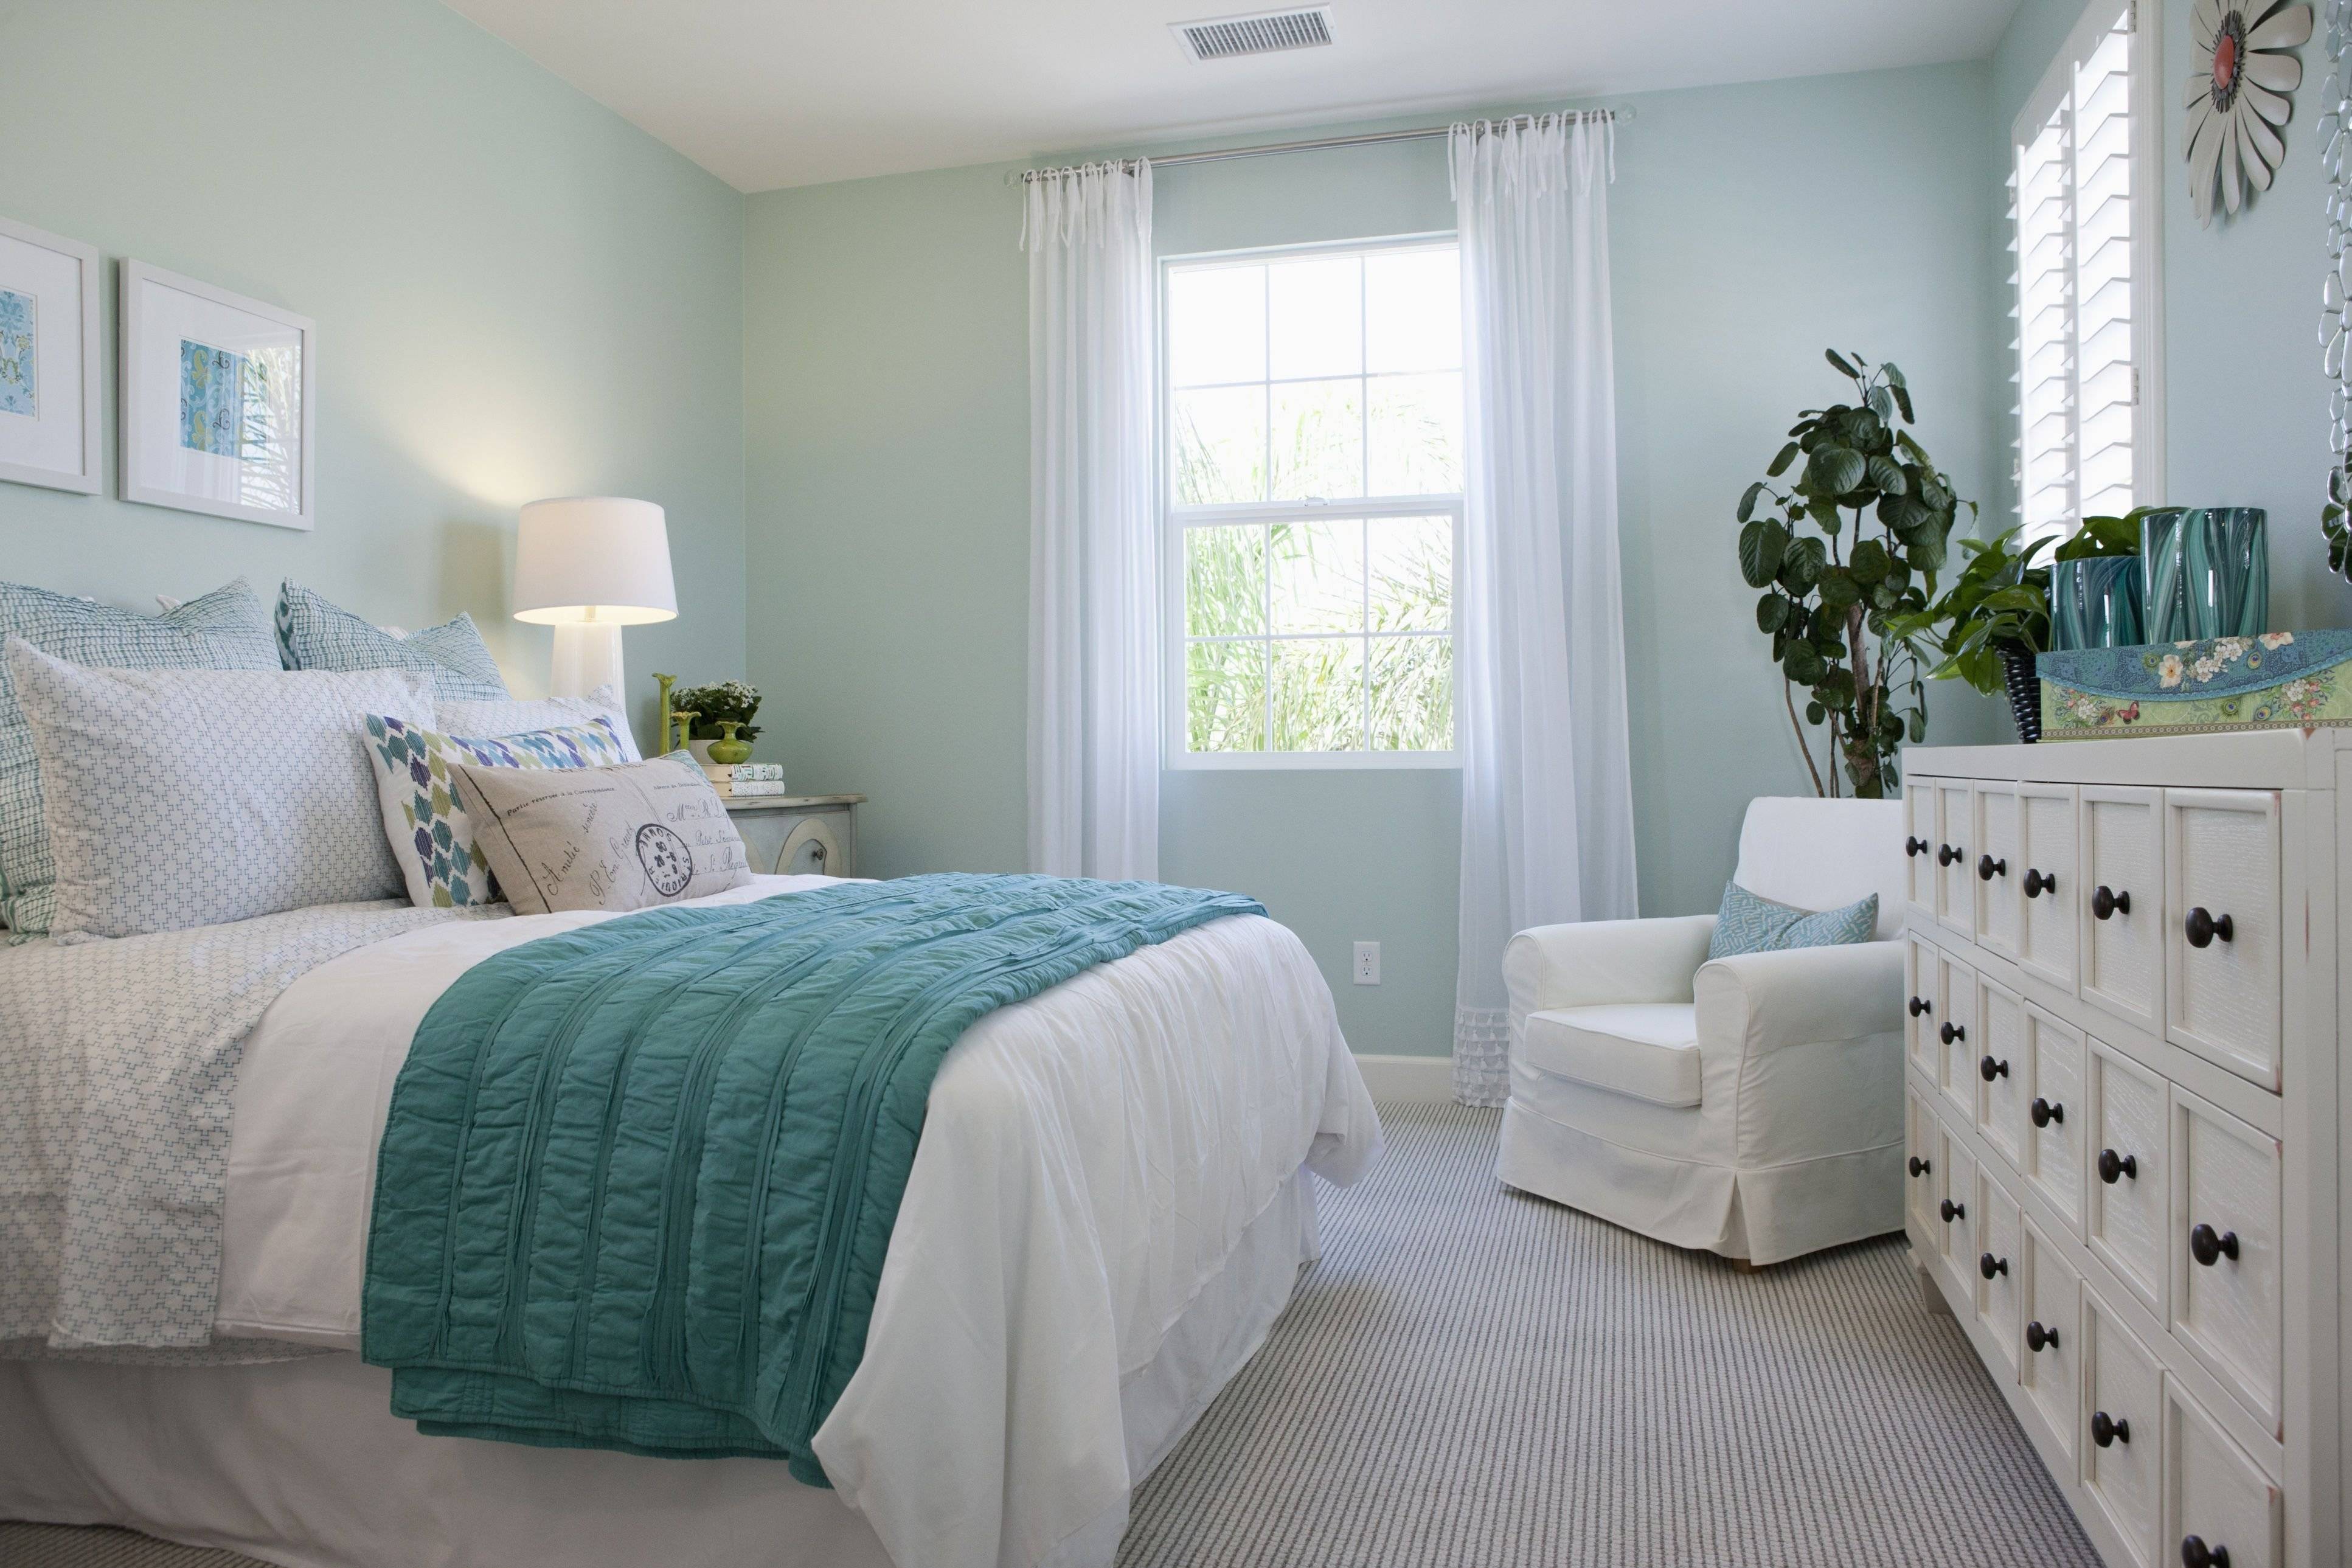 Модная голубая спальня: 29 новых идеи спальни в голубых тонах